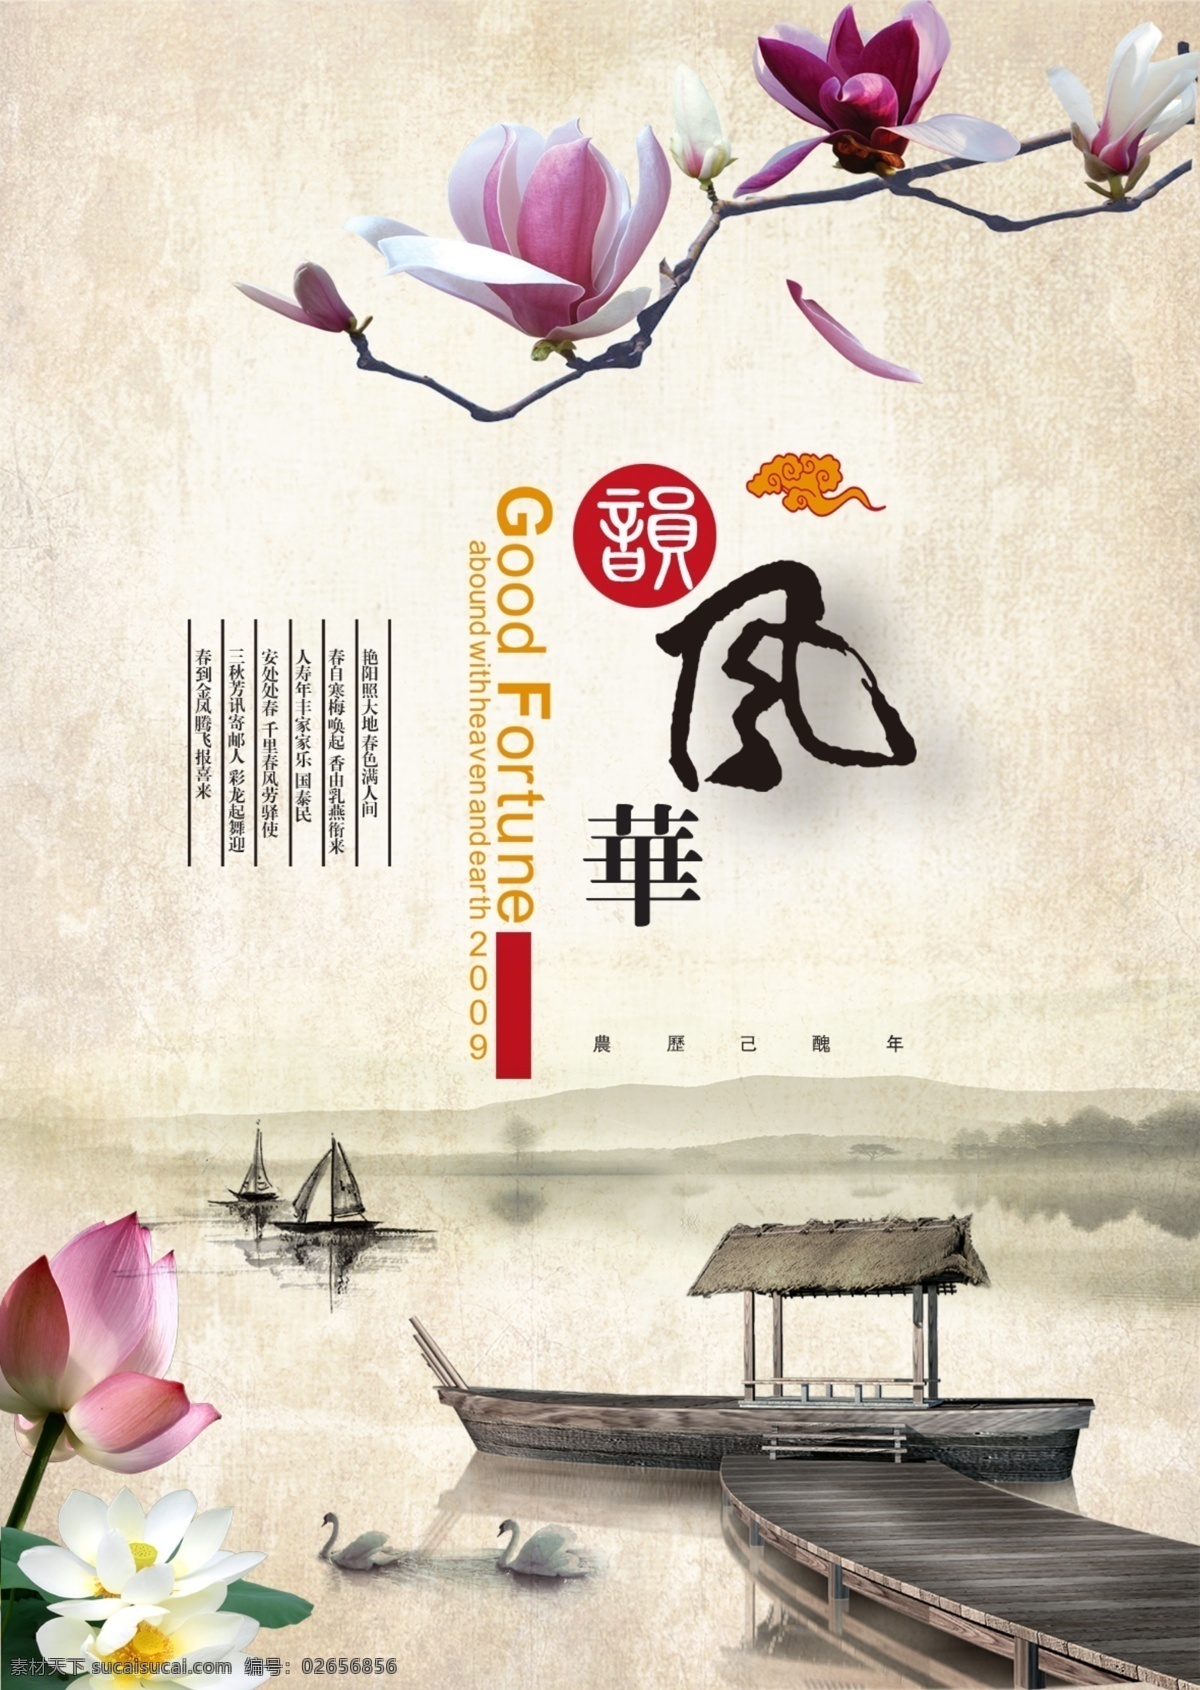 中国 风 海报 水墨画效果 玉兰花 中国风 原创设计 原创海报